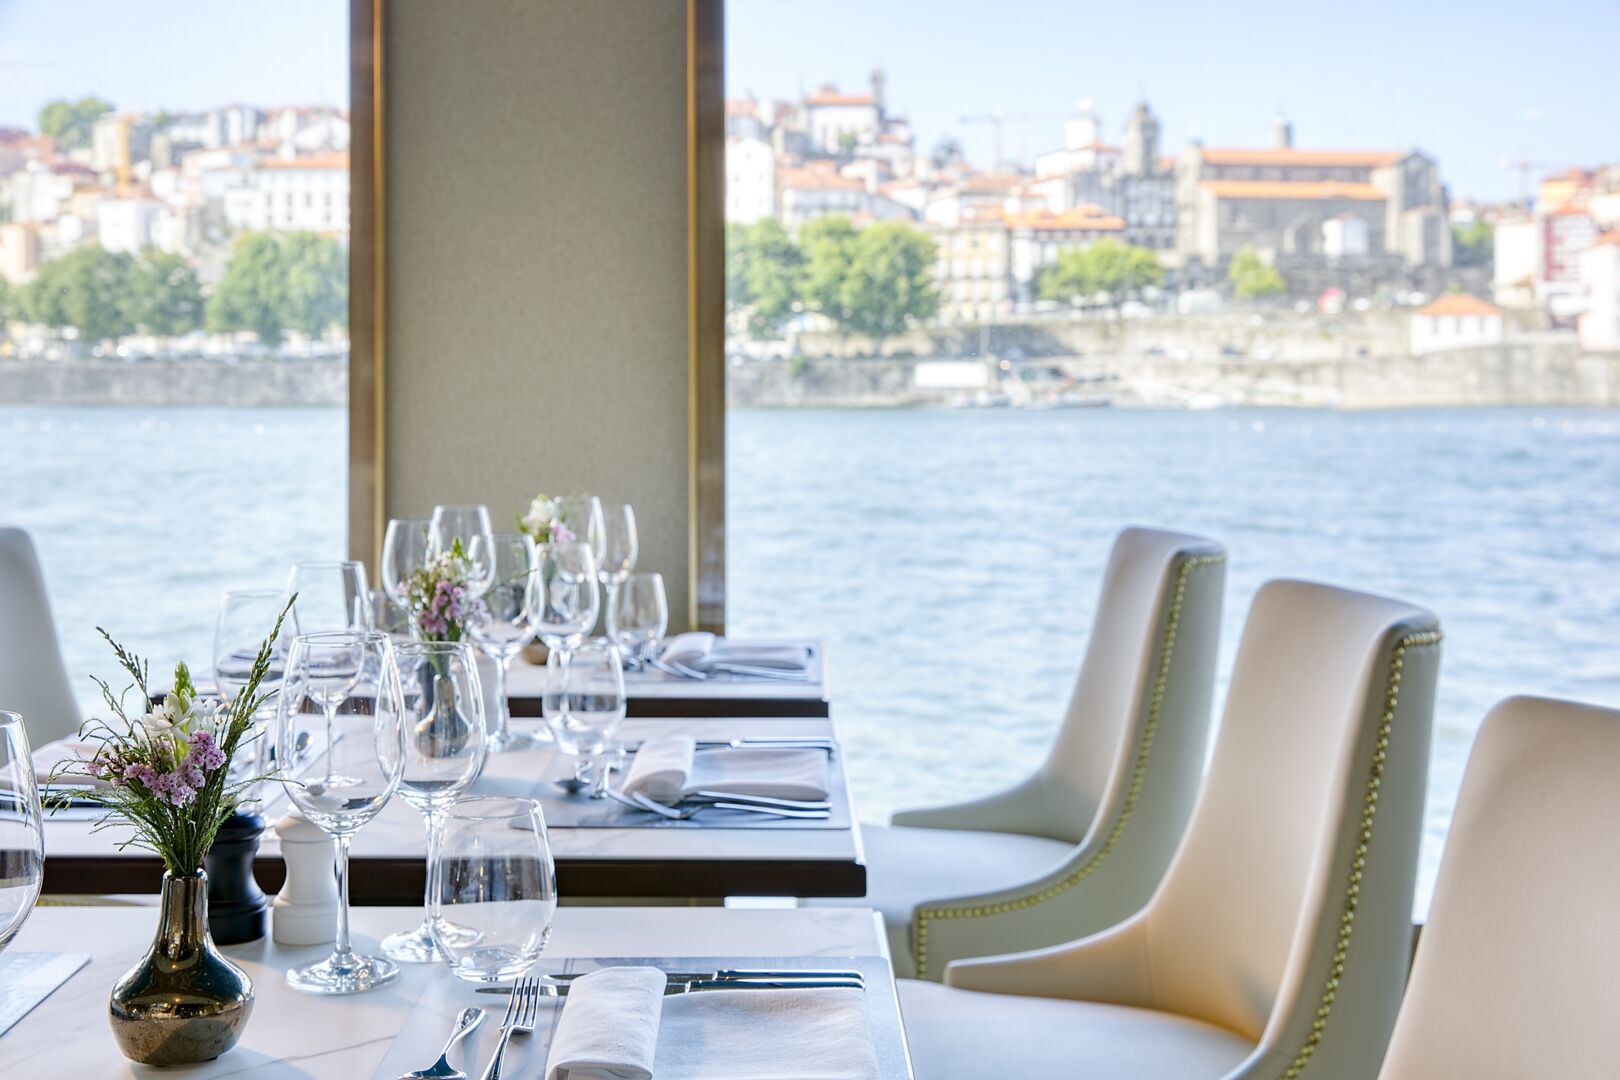 Dining Culinary River Cruise Ships Europe Uniworld AmaWaterways Viking